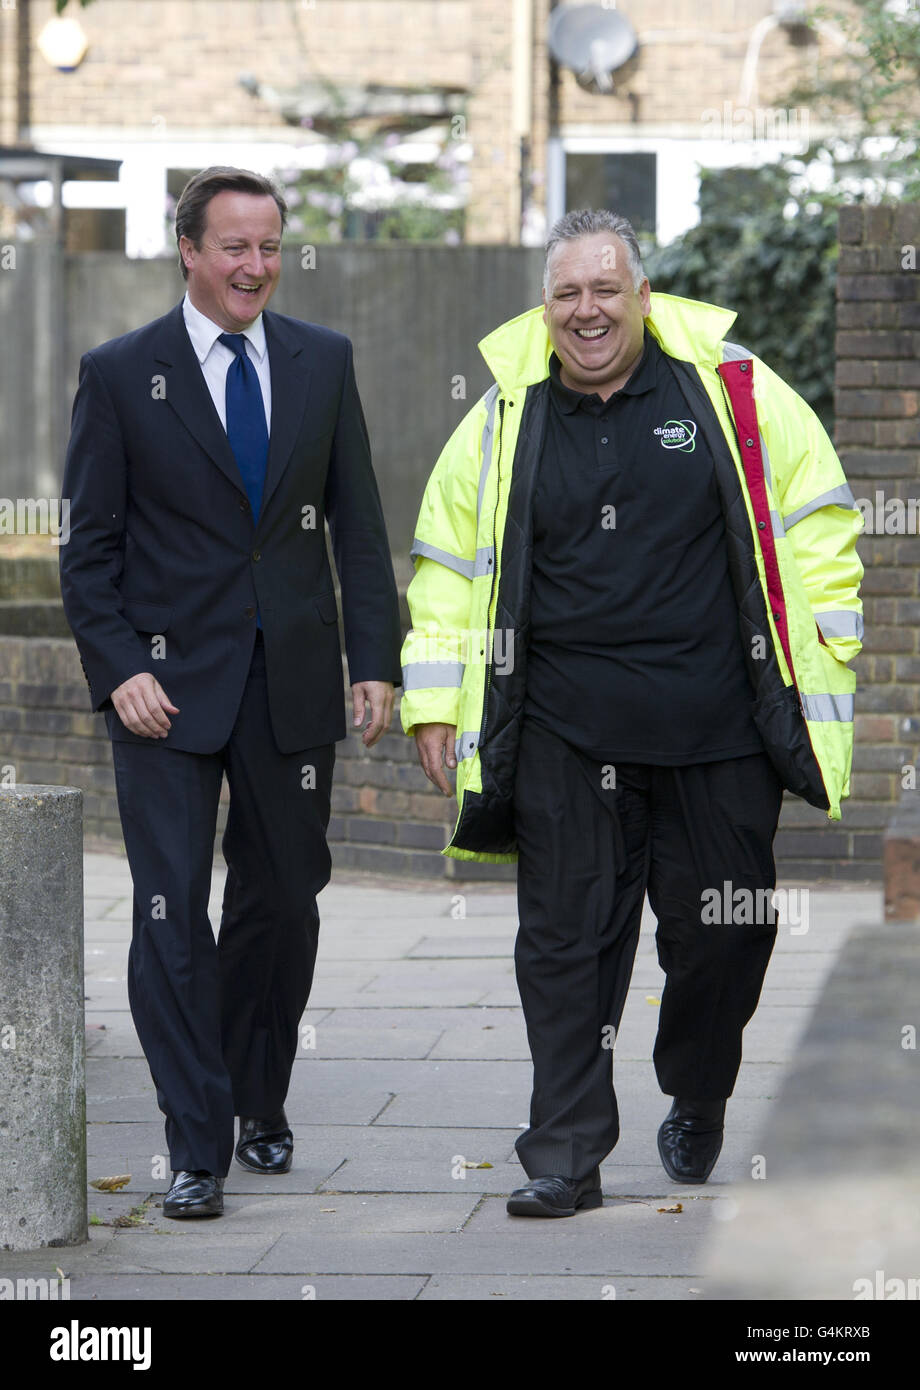 Premierminister David Cameron besucht einen Wohnblock in Hammersmith, wo Wandisolierung eingebaut wird. Cameron räumte ein, dass die Regierung "härter und schneller" arbeiten müsse, um die Energiekosten heute vor einem Gipfel zu senken. Stockfoto